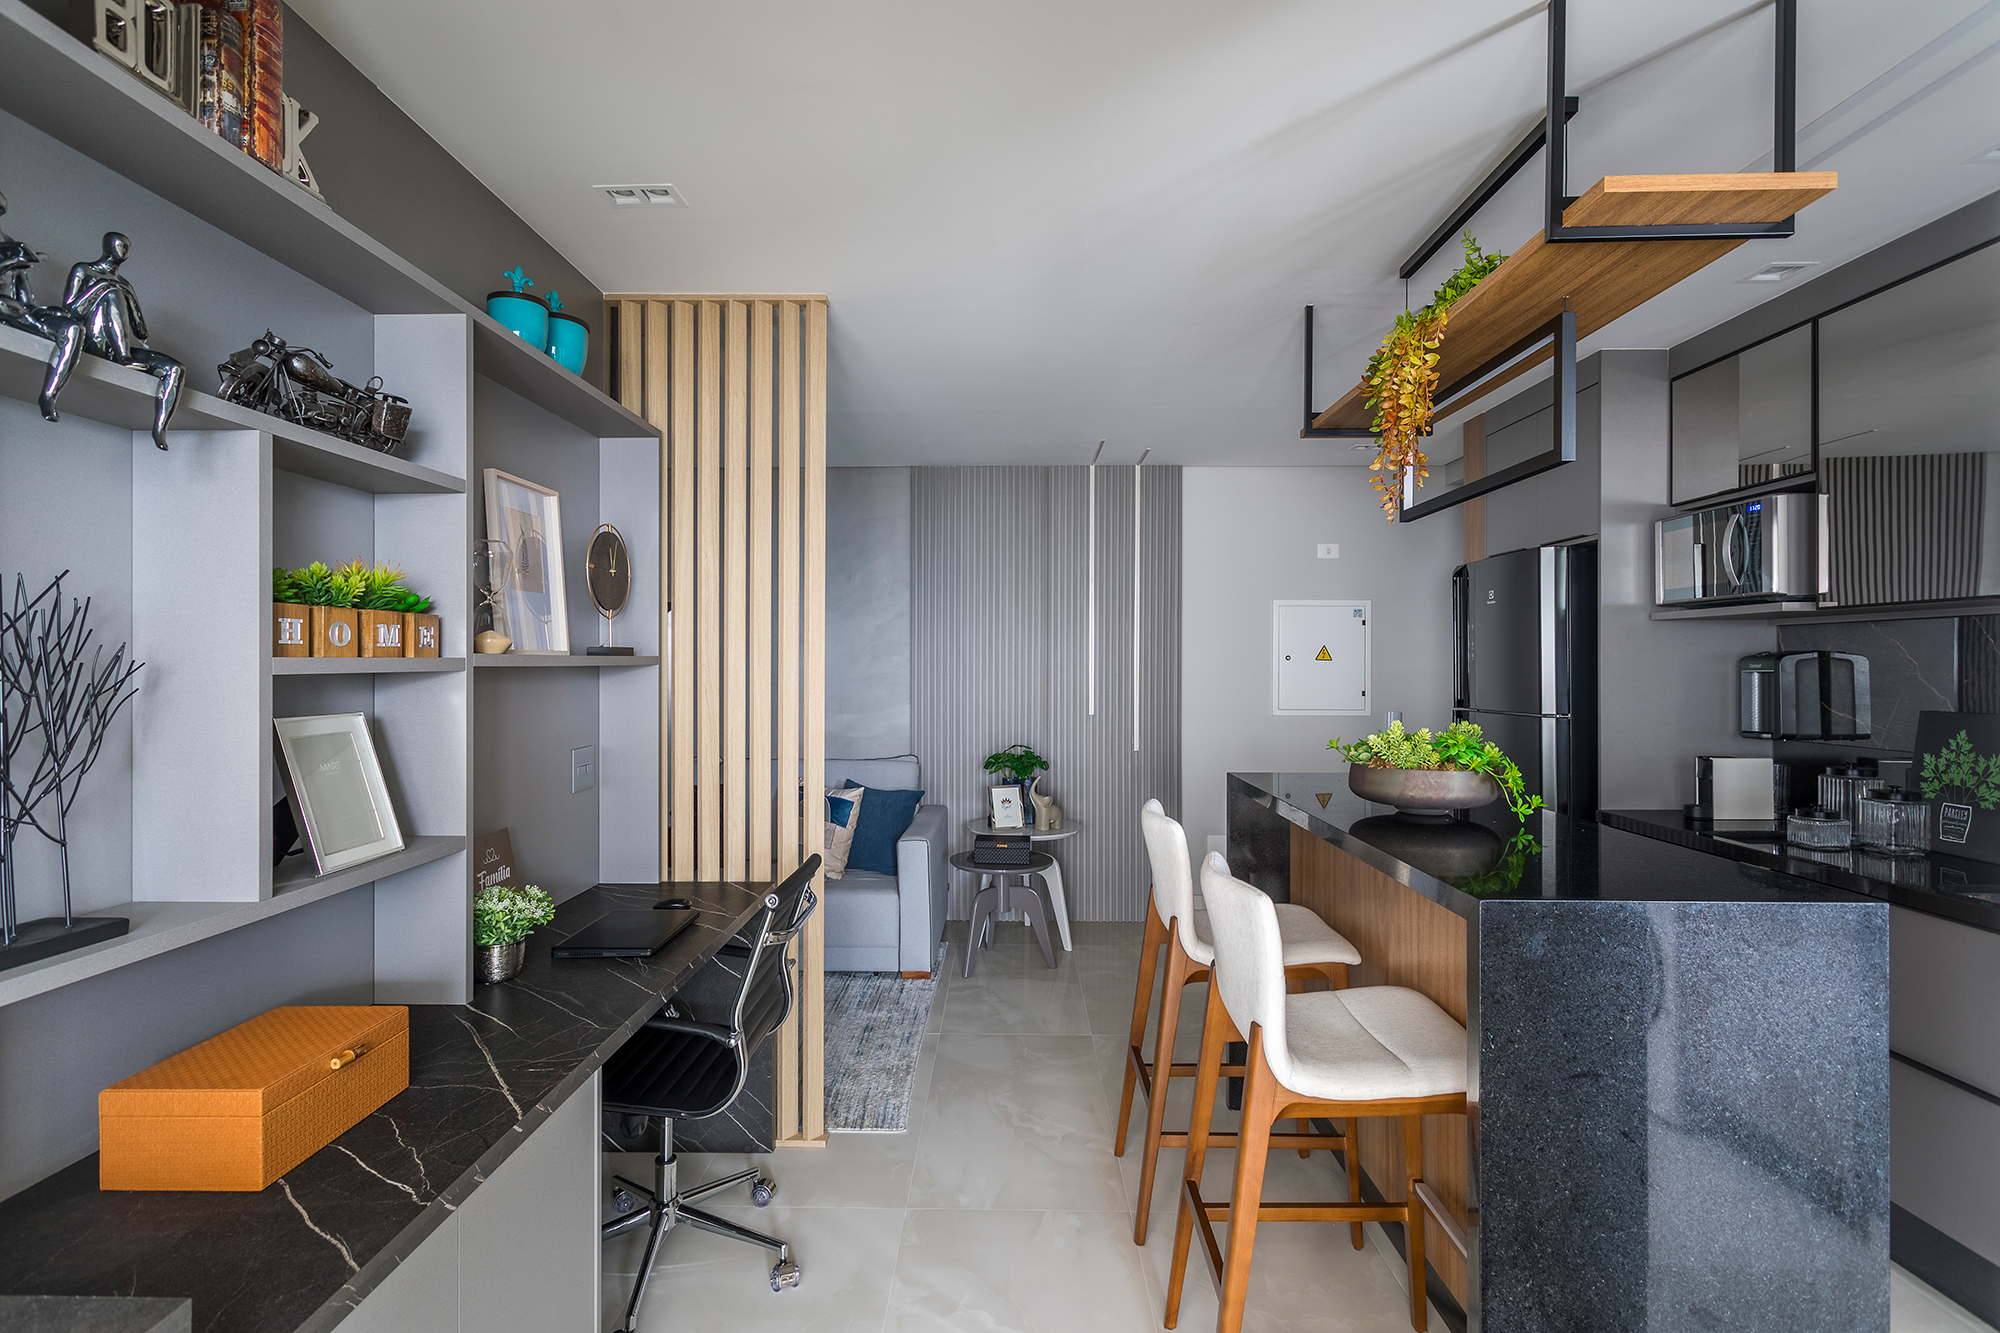  82 m² leilighet med vertikal hage i gangen og kjøkken med øy